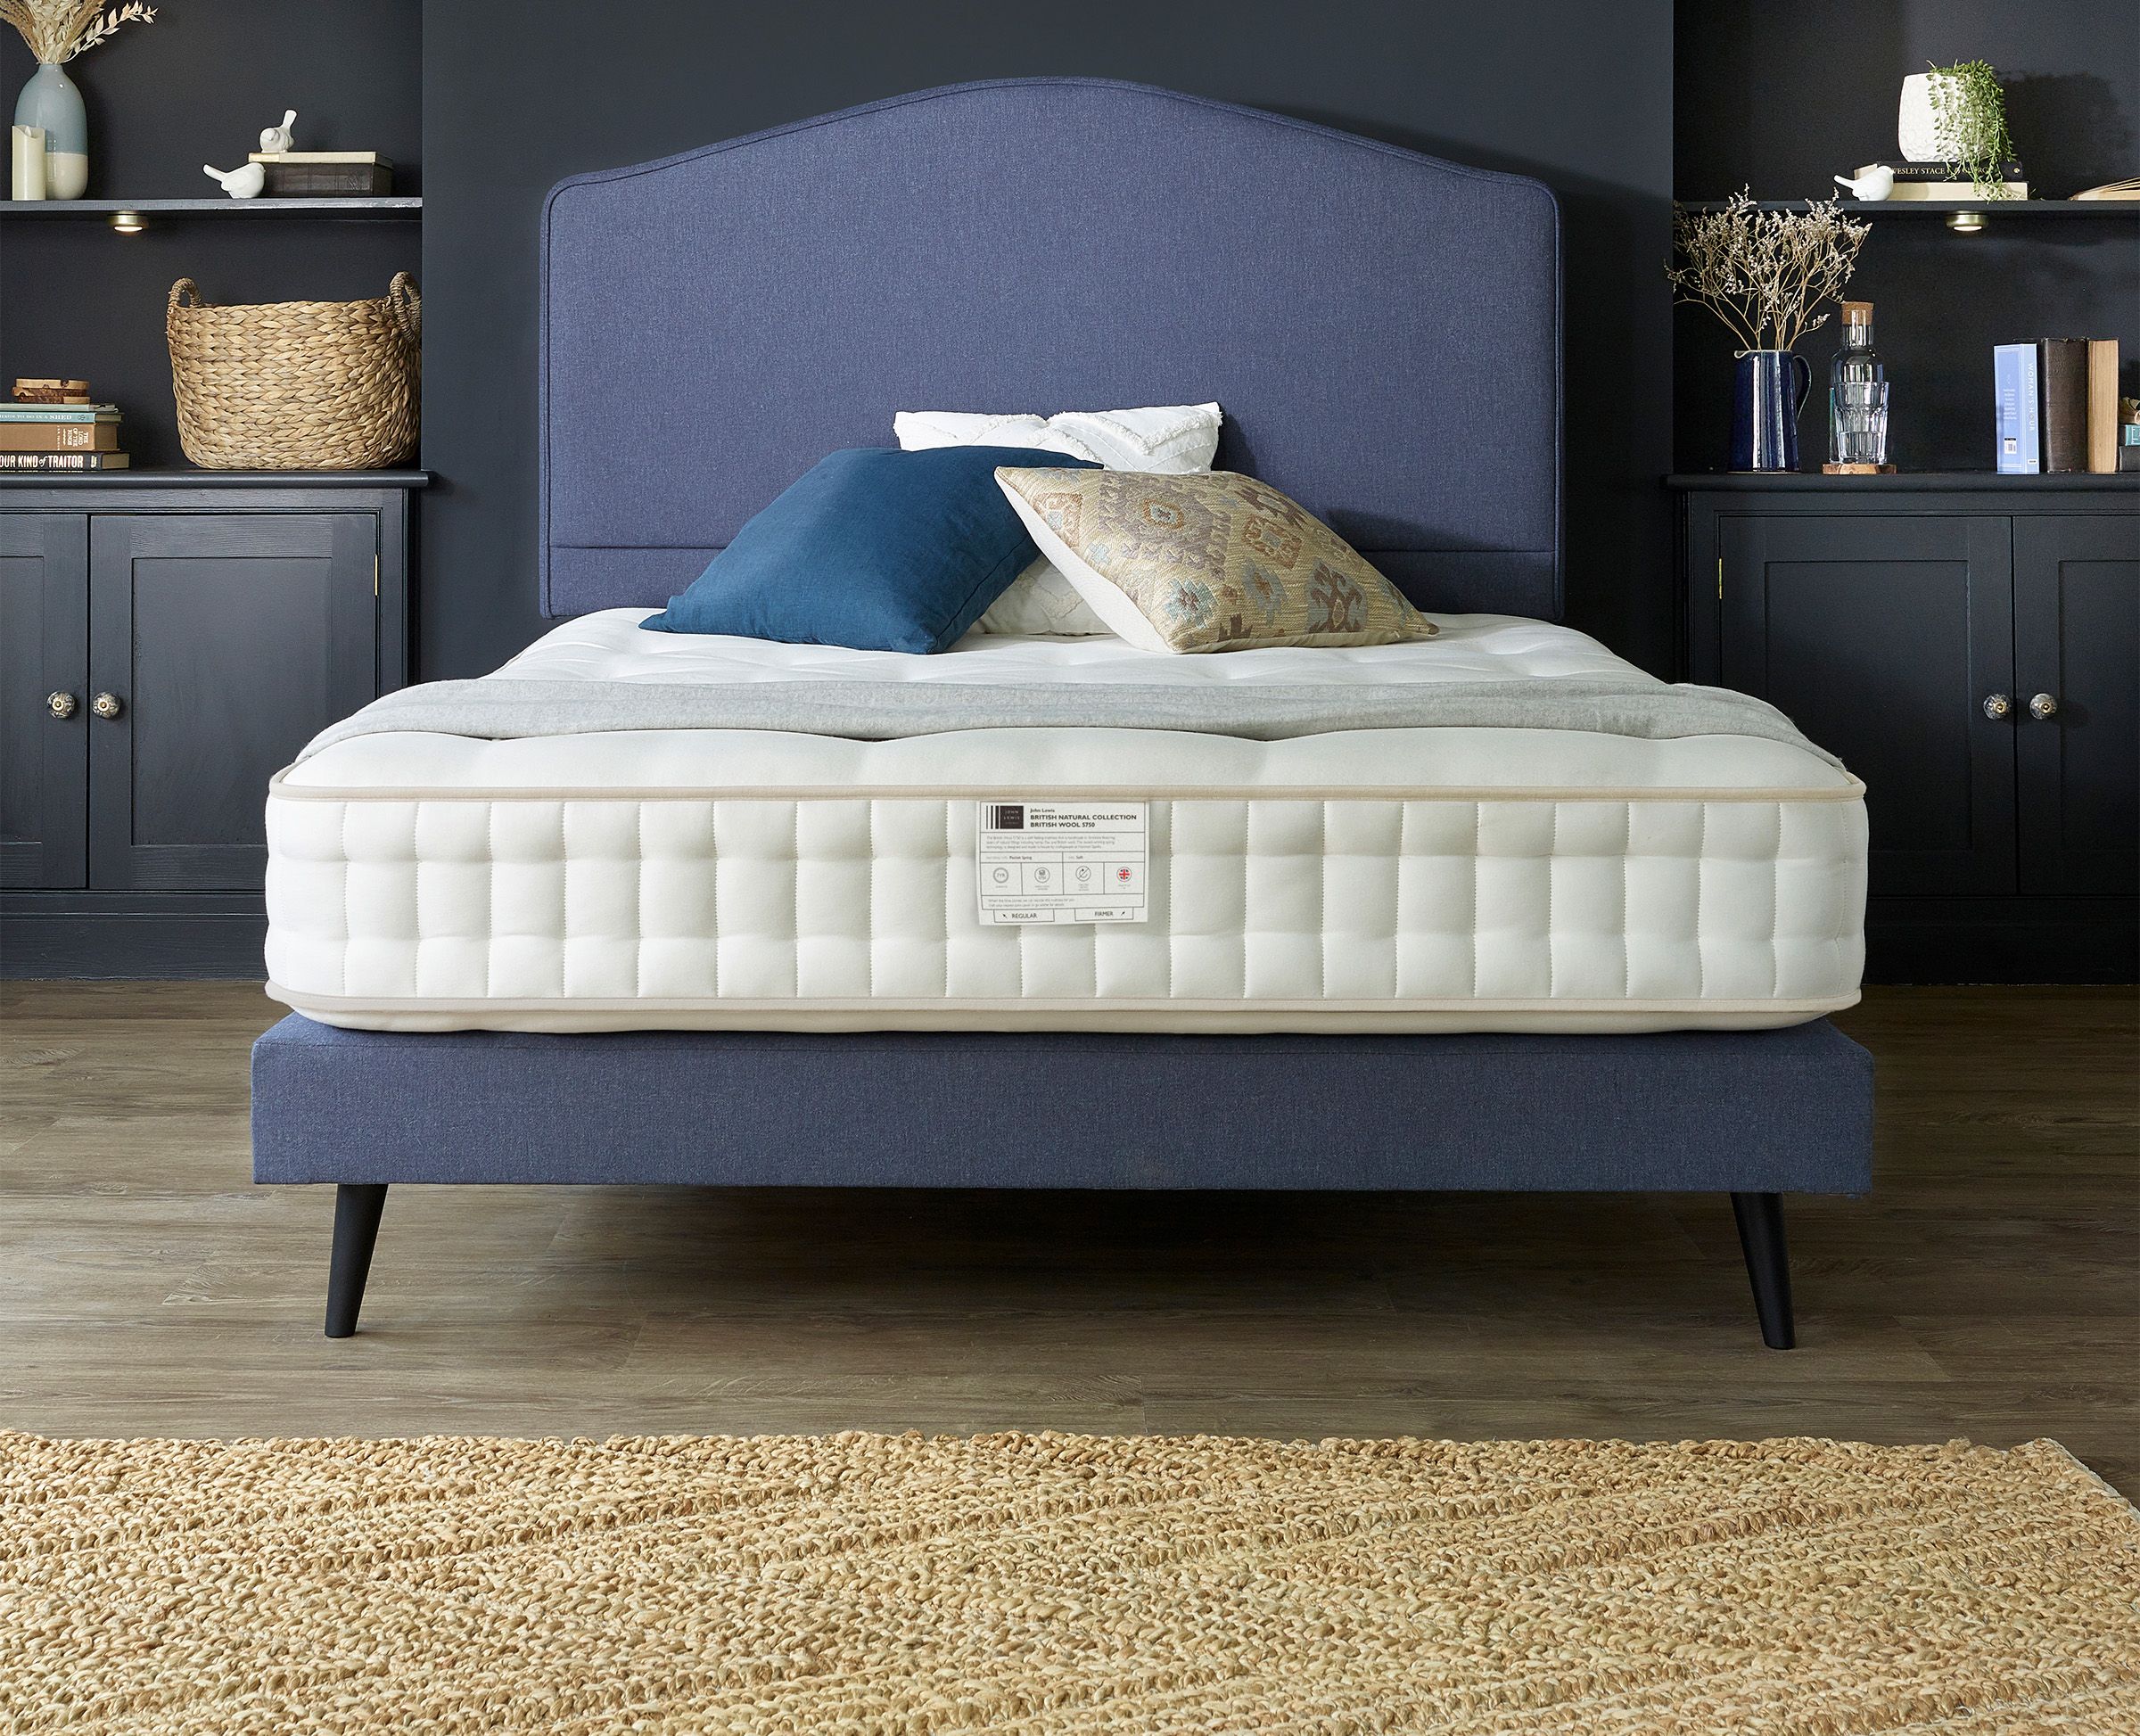 English cottton mattress ifc image